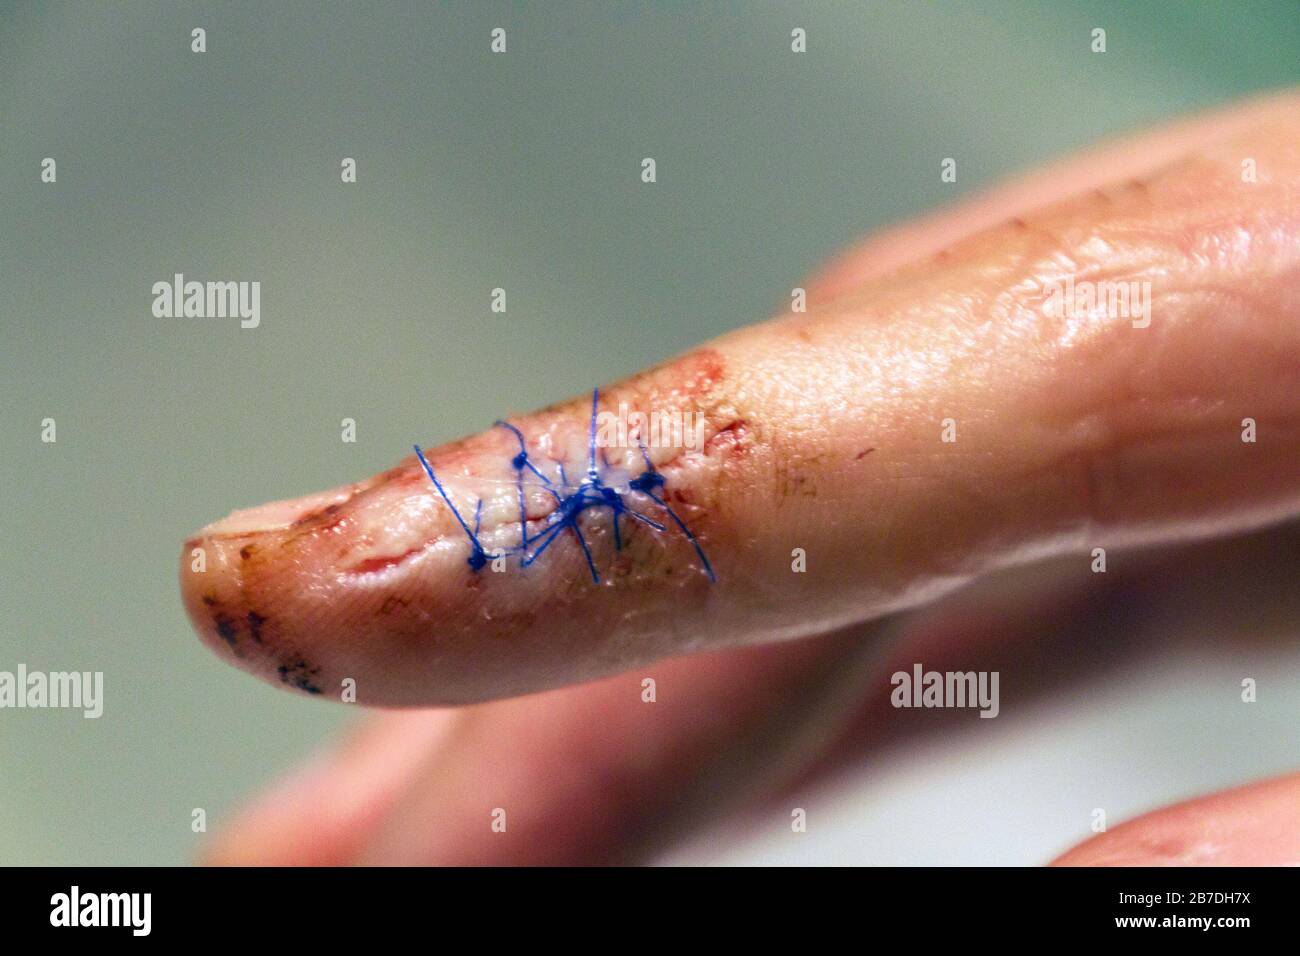 Nahaufnahme eines gezogenen Fingers mit blutigen Stichen, die einen langen, tiefen Schnitt am Ende eines Zeigefingers abschließen Stockfoto